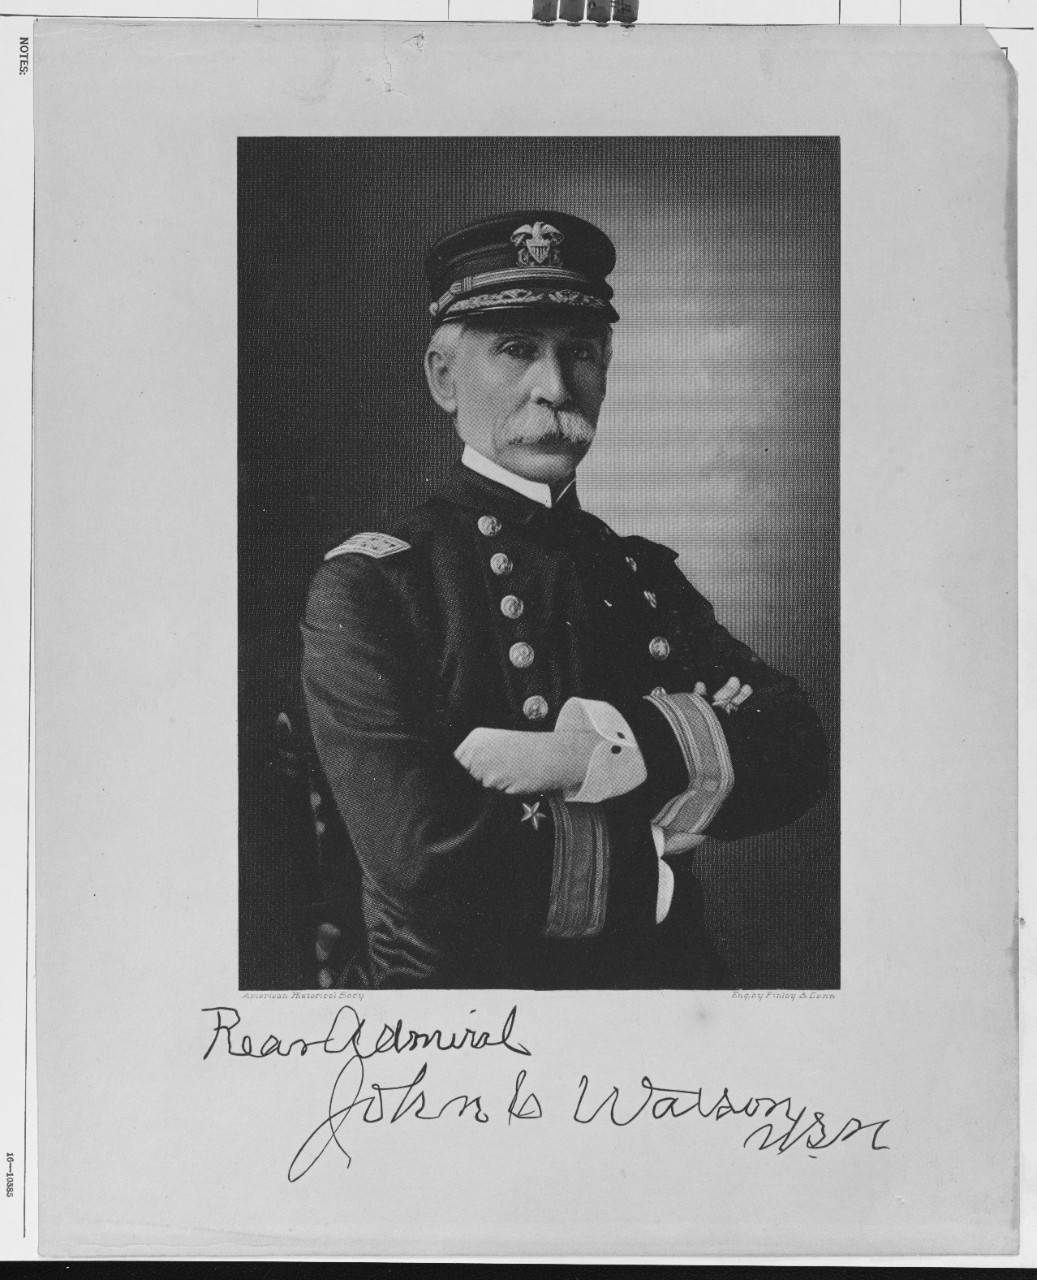 Rear Admiral John C. Watson